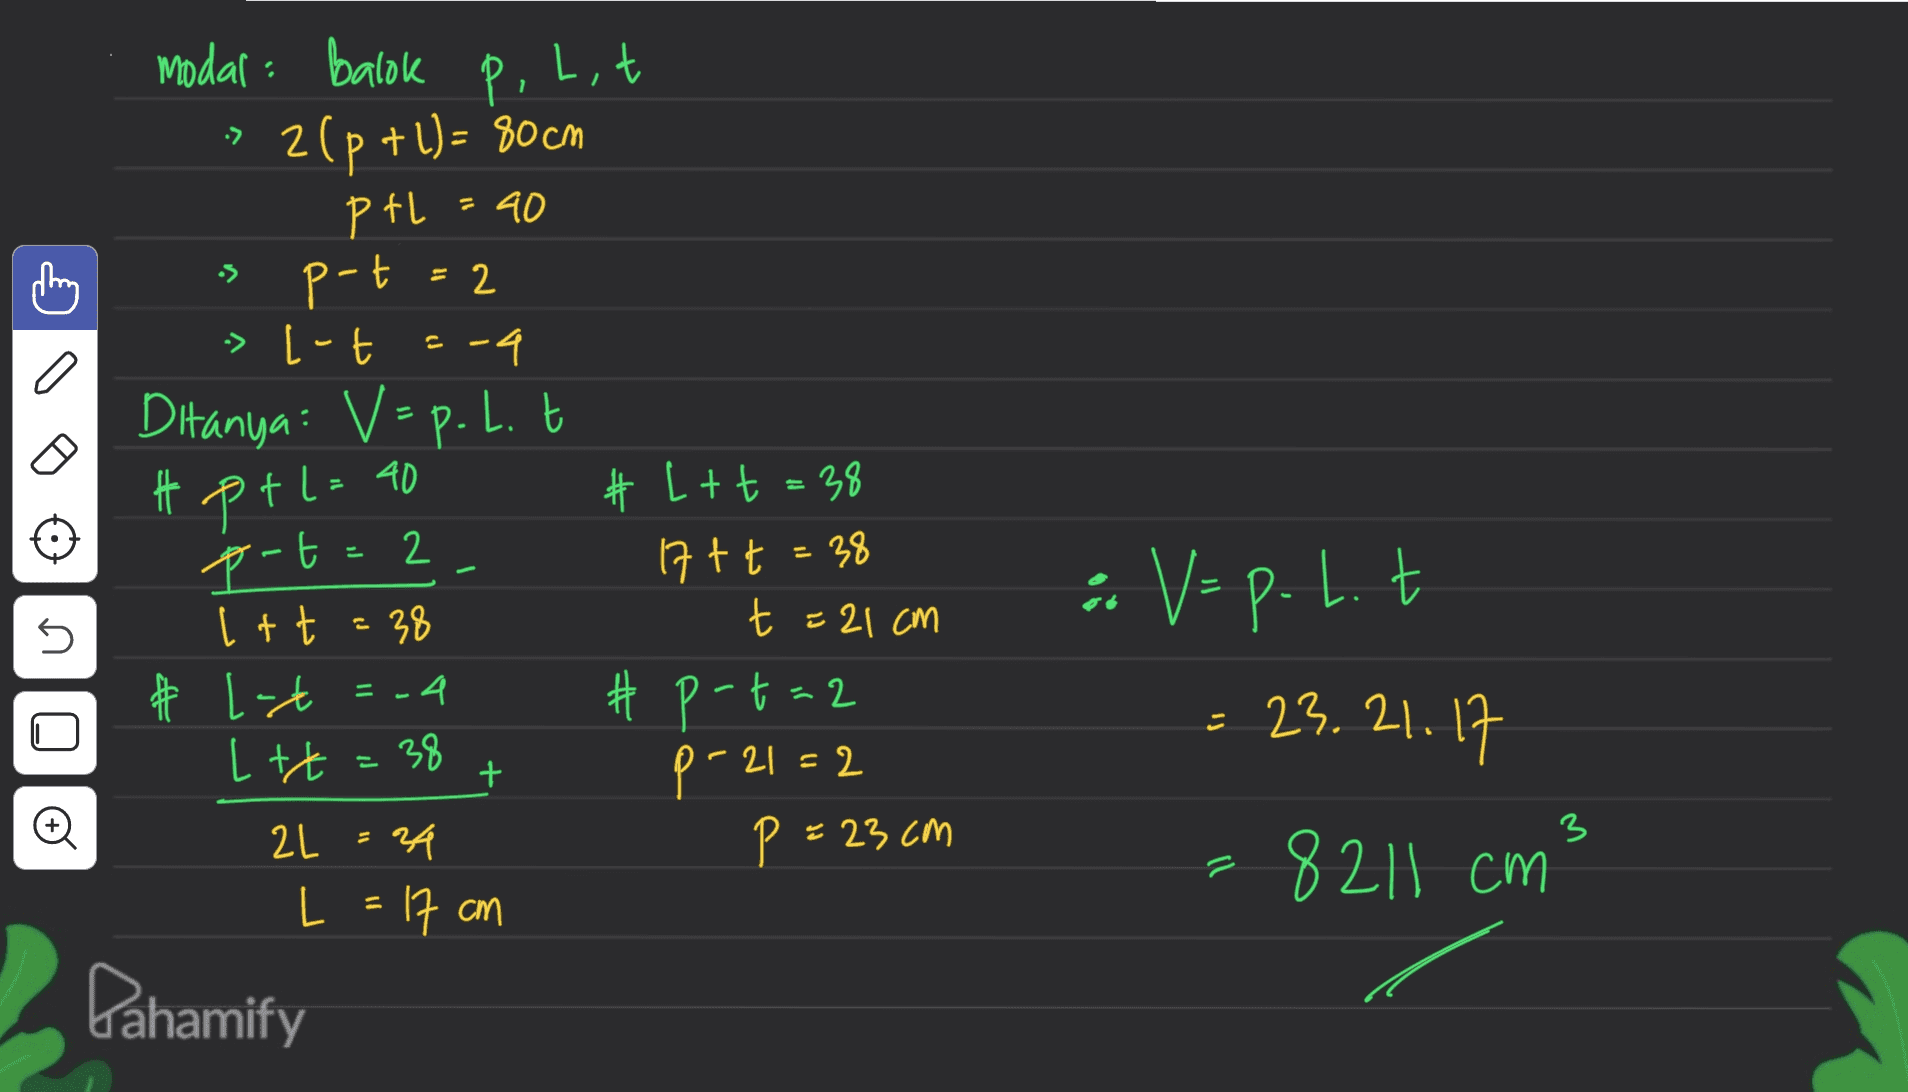 P. Lit 1 -> - 40 = 2 p modal: Balok 2(p+1) = 80 cm PtL p-t > [-t -4 Ditanya: V = p. 1. t t pt l= 40 p-t=2 Itt = 38 * # L-t =-4 Let=38 2L = 24 L = 17 cm Dahamify 2 T U # L+ t = 38 17+ t = 38 t = 21 cm #p-t=2 p-21=2 P = 23cm n : Vep.lt 23.21.17 =8211 cm + 3 